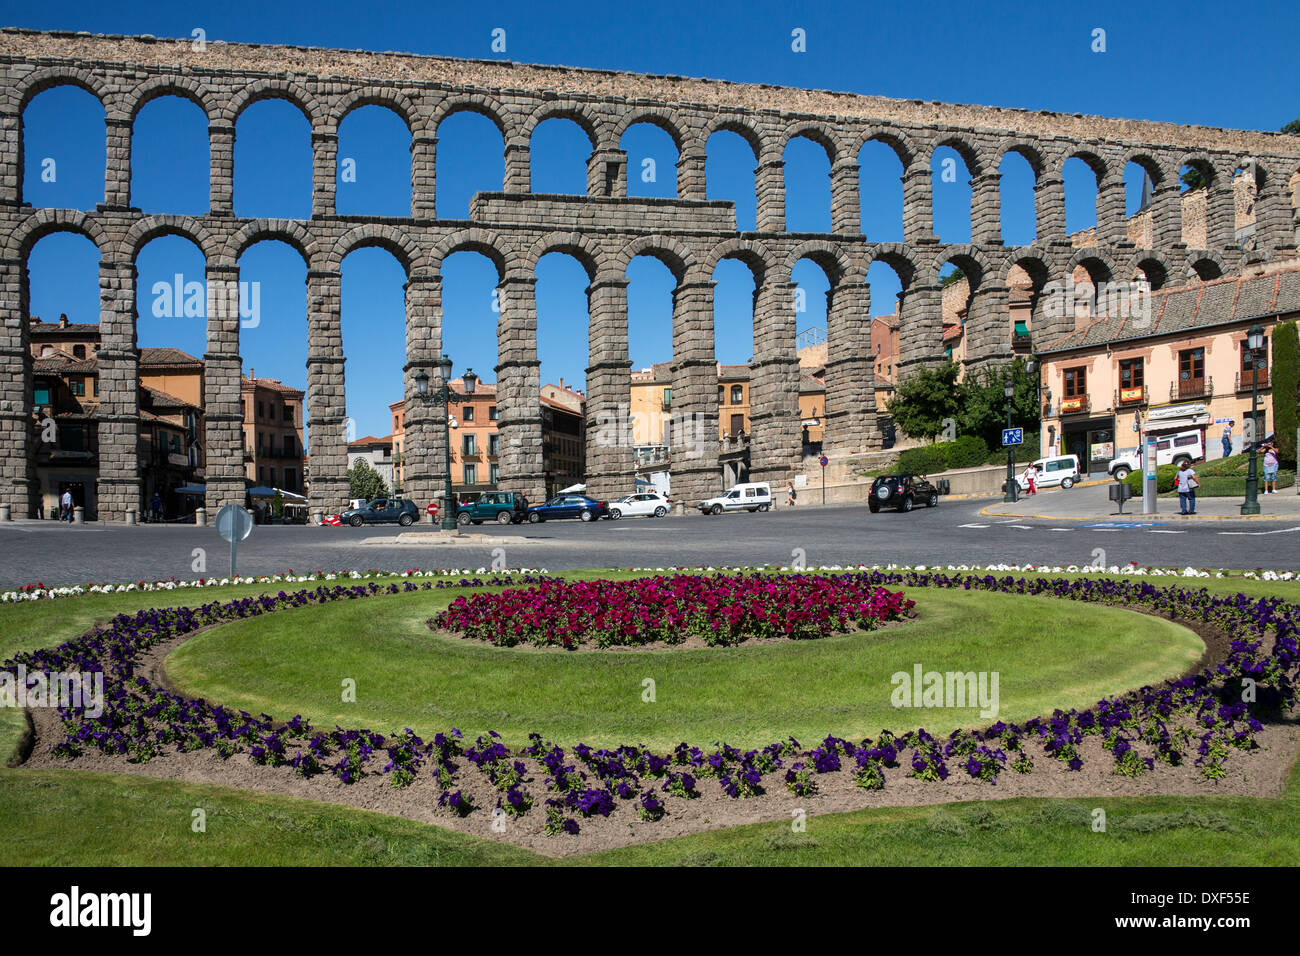 L'Aqueduc romain dans la ville de Segovia dans le Castilla-y-Leon région du centre de l'Espagne. Banque D'Images